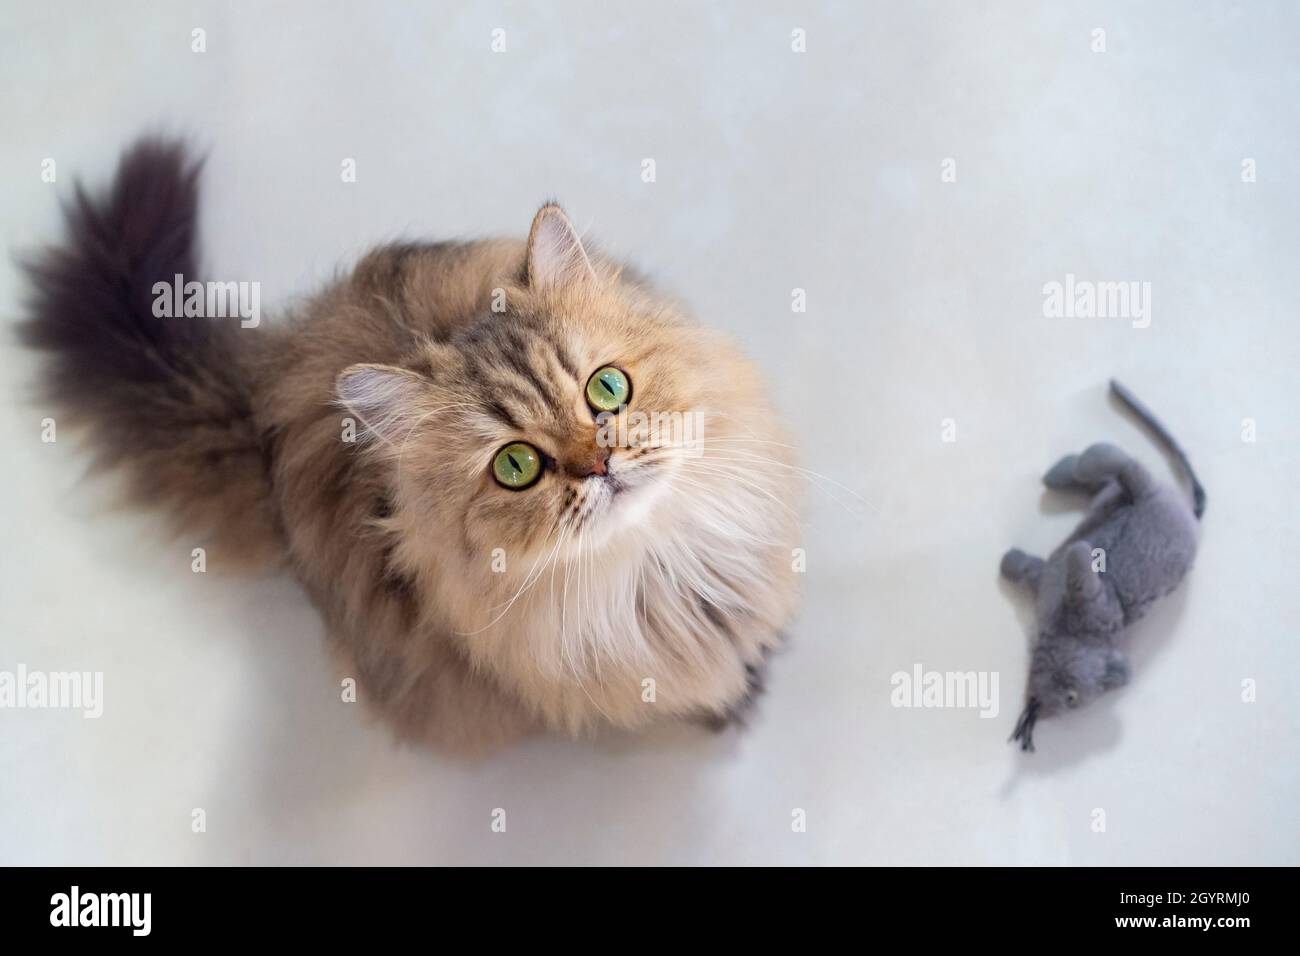 Draufsicht auf niedliche glückliche britische Langhaar-Chinchilla-perserkätzchen Katze steht neben Mausspuppe und schaut auf die Kamera Besitzer und bat um Tierfutter Stockfoto